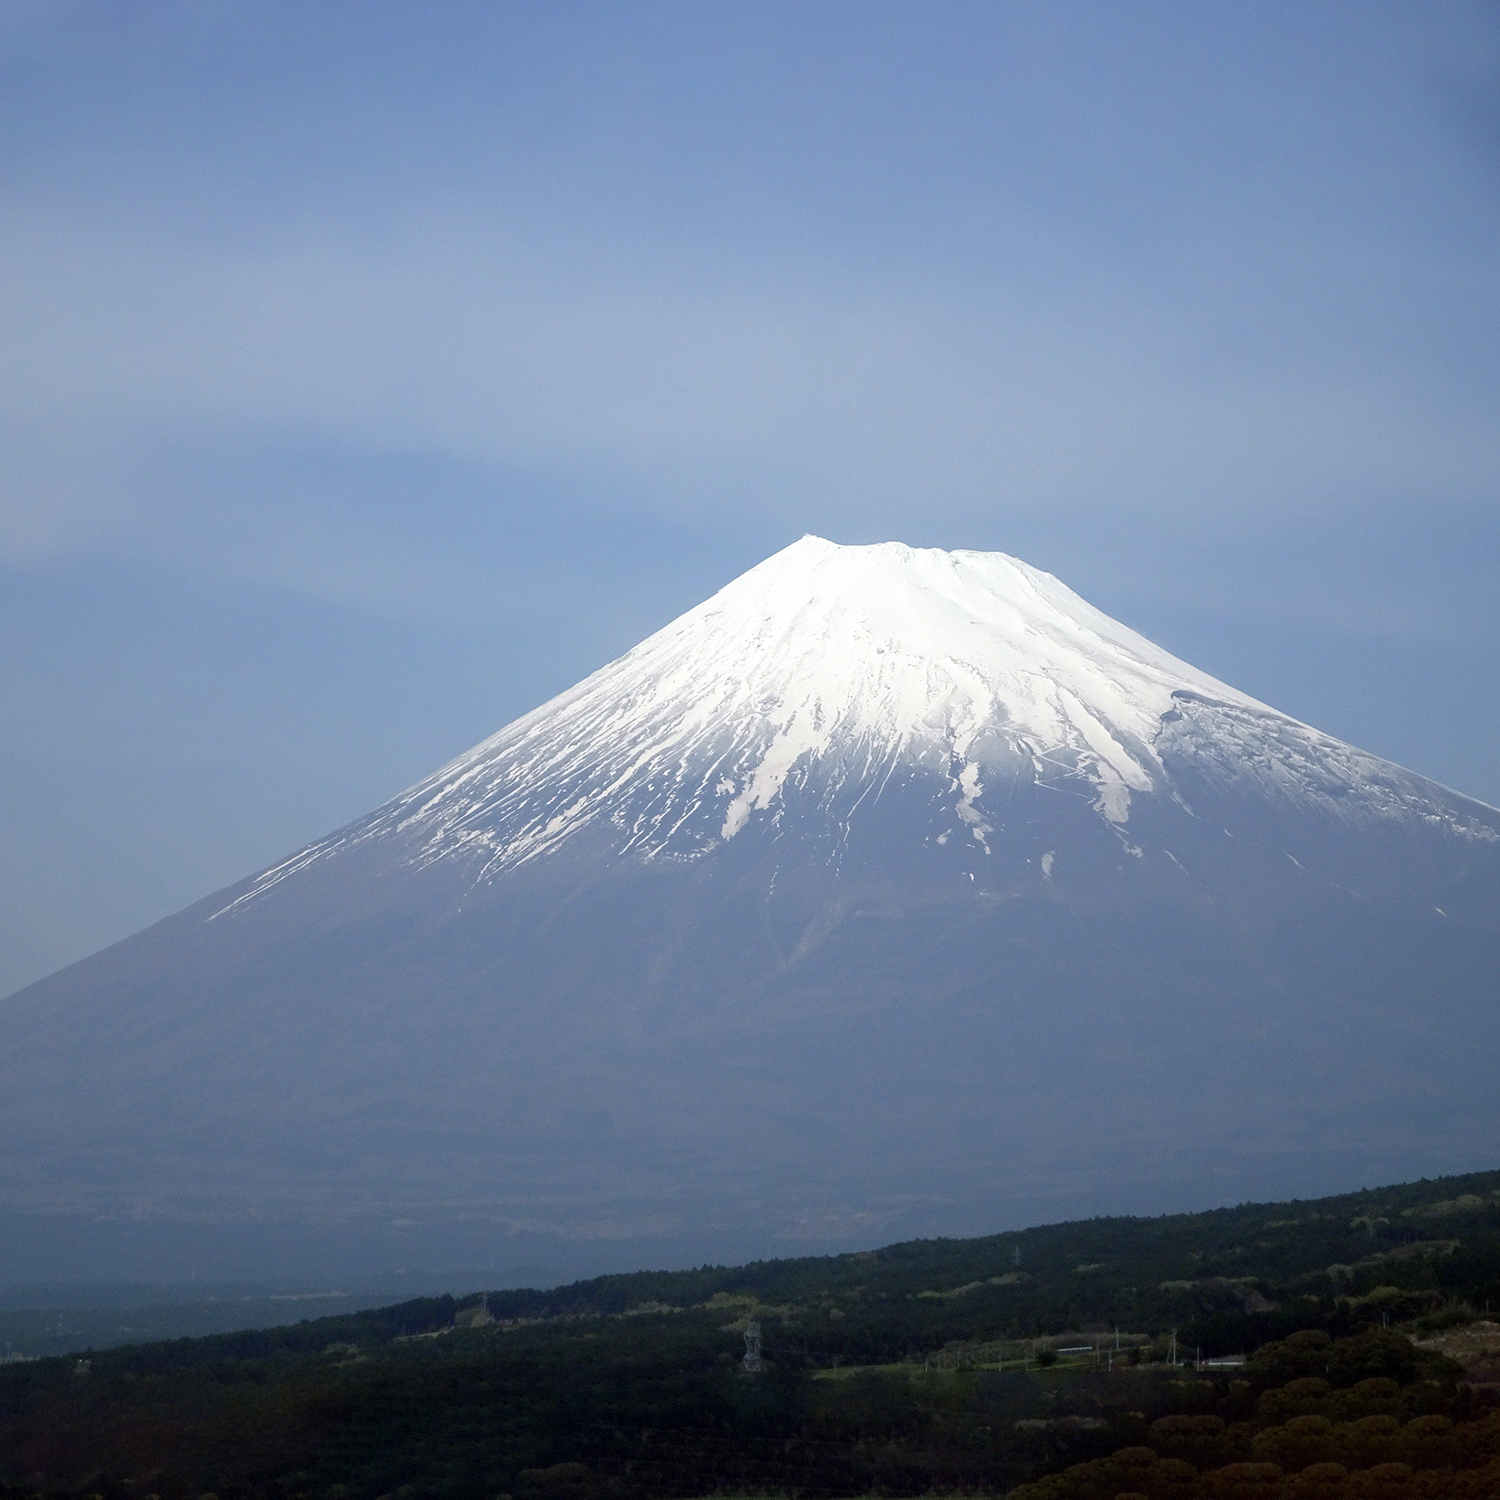 Der Berg Fuji vom Shinkasen aus gesehen